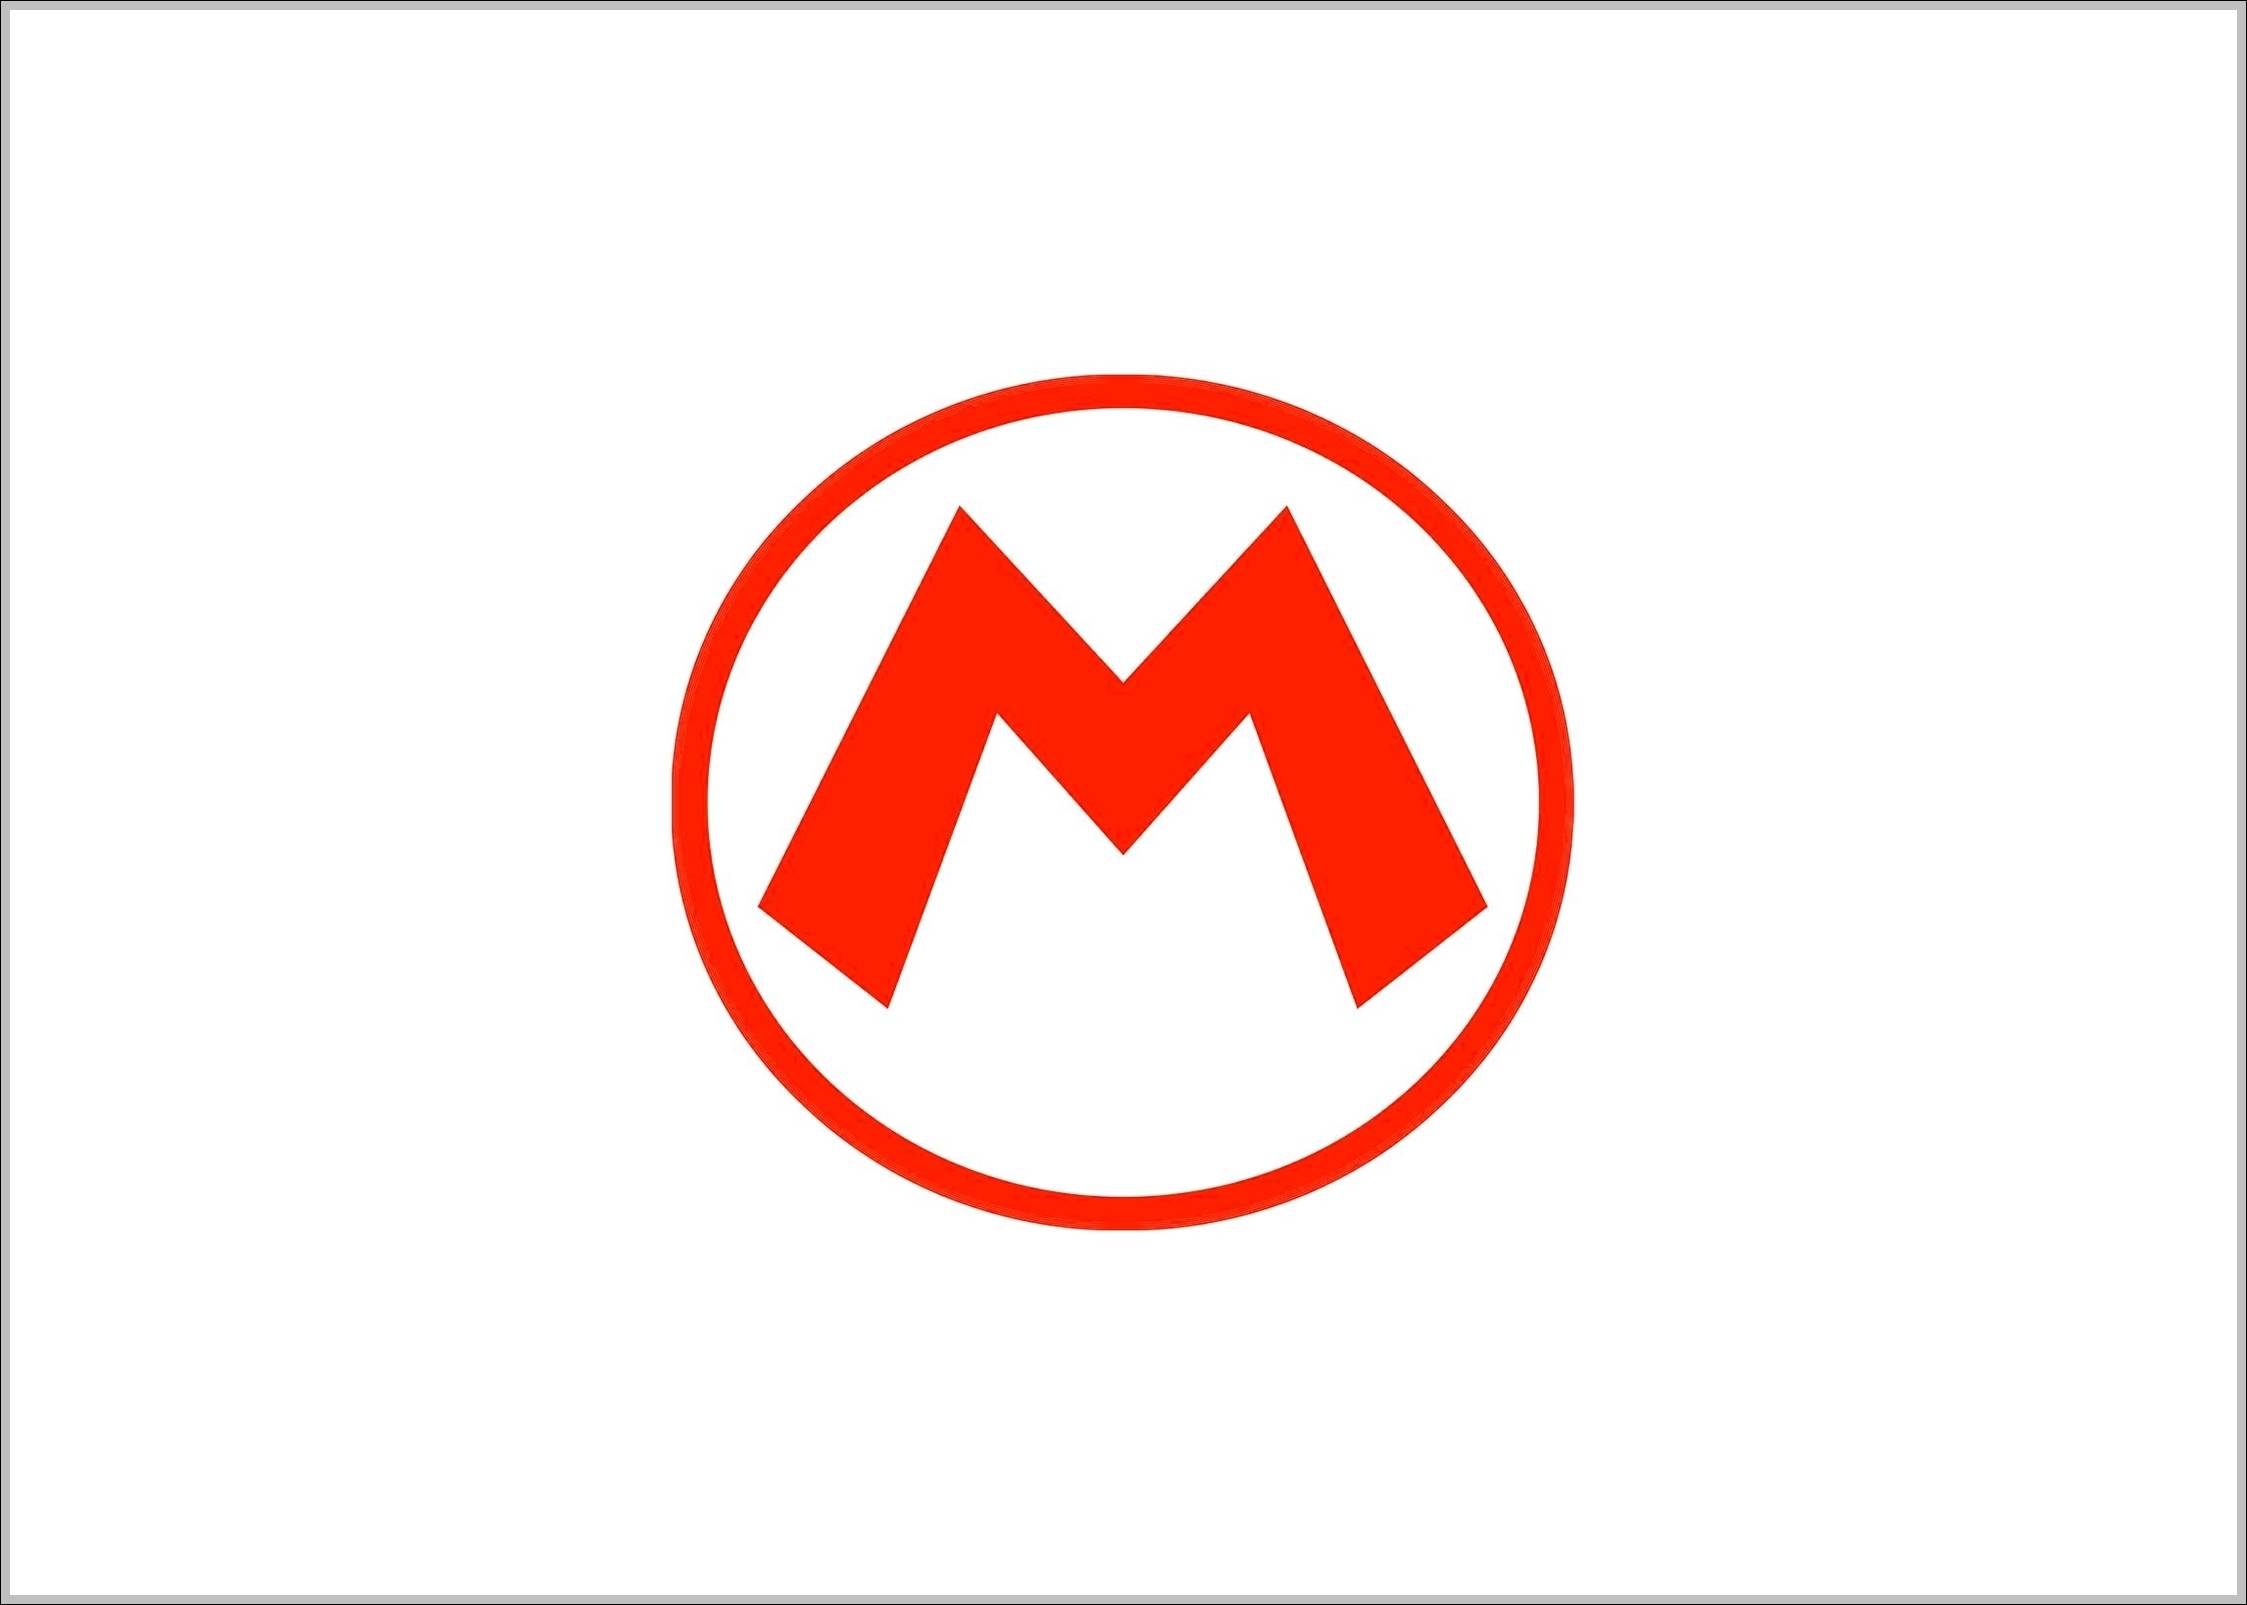 Mario logo